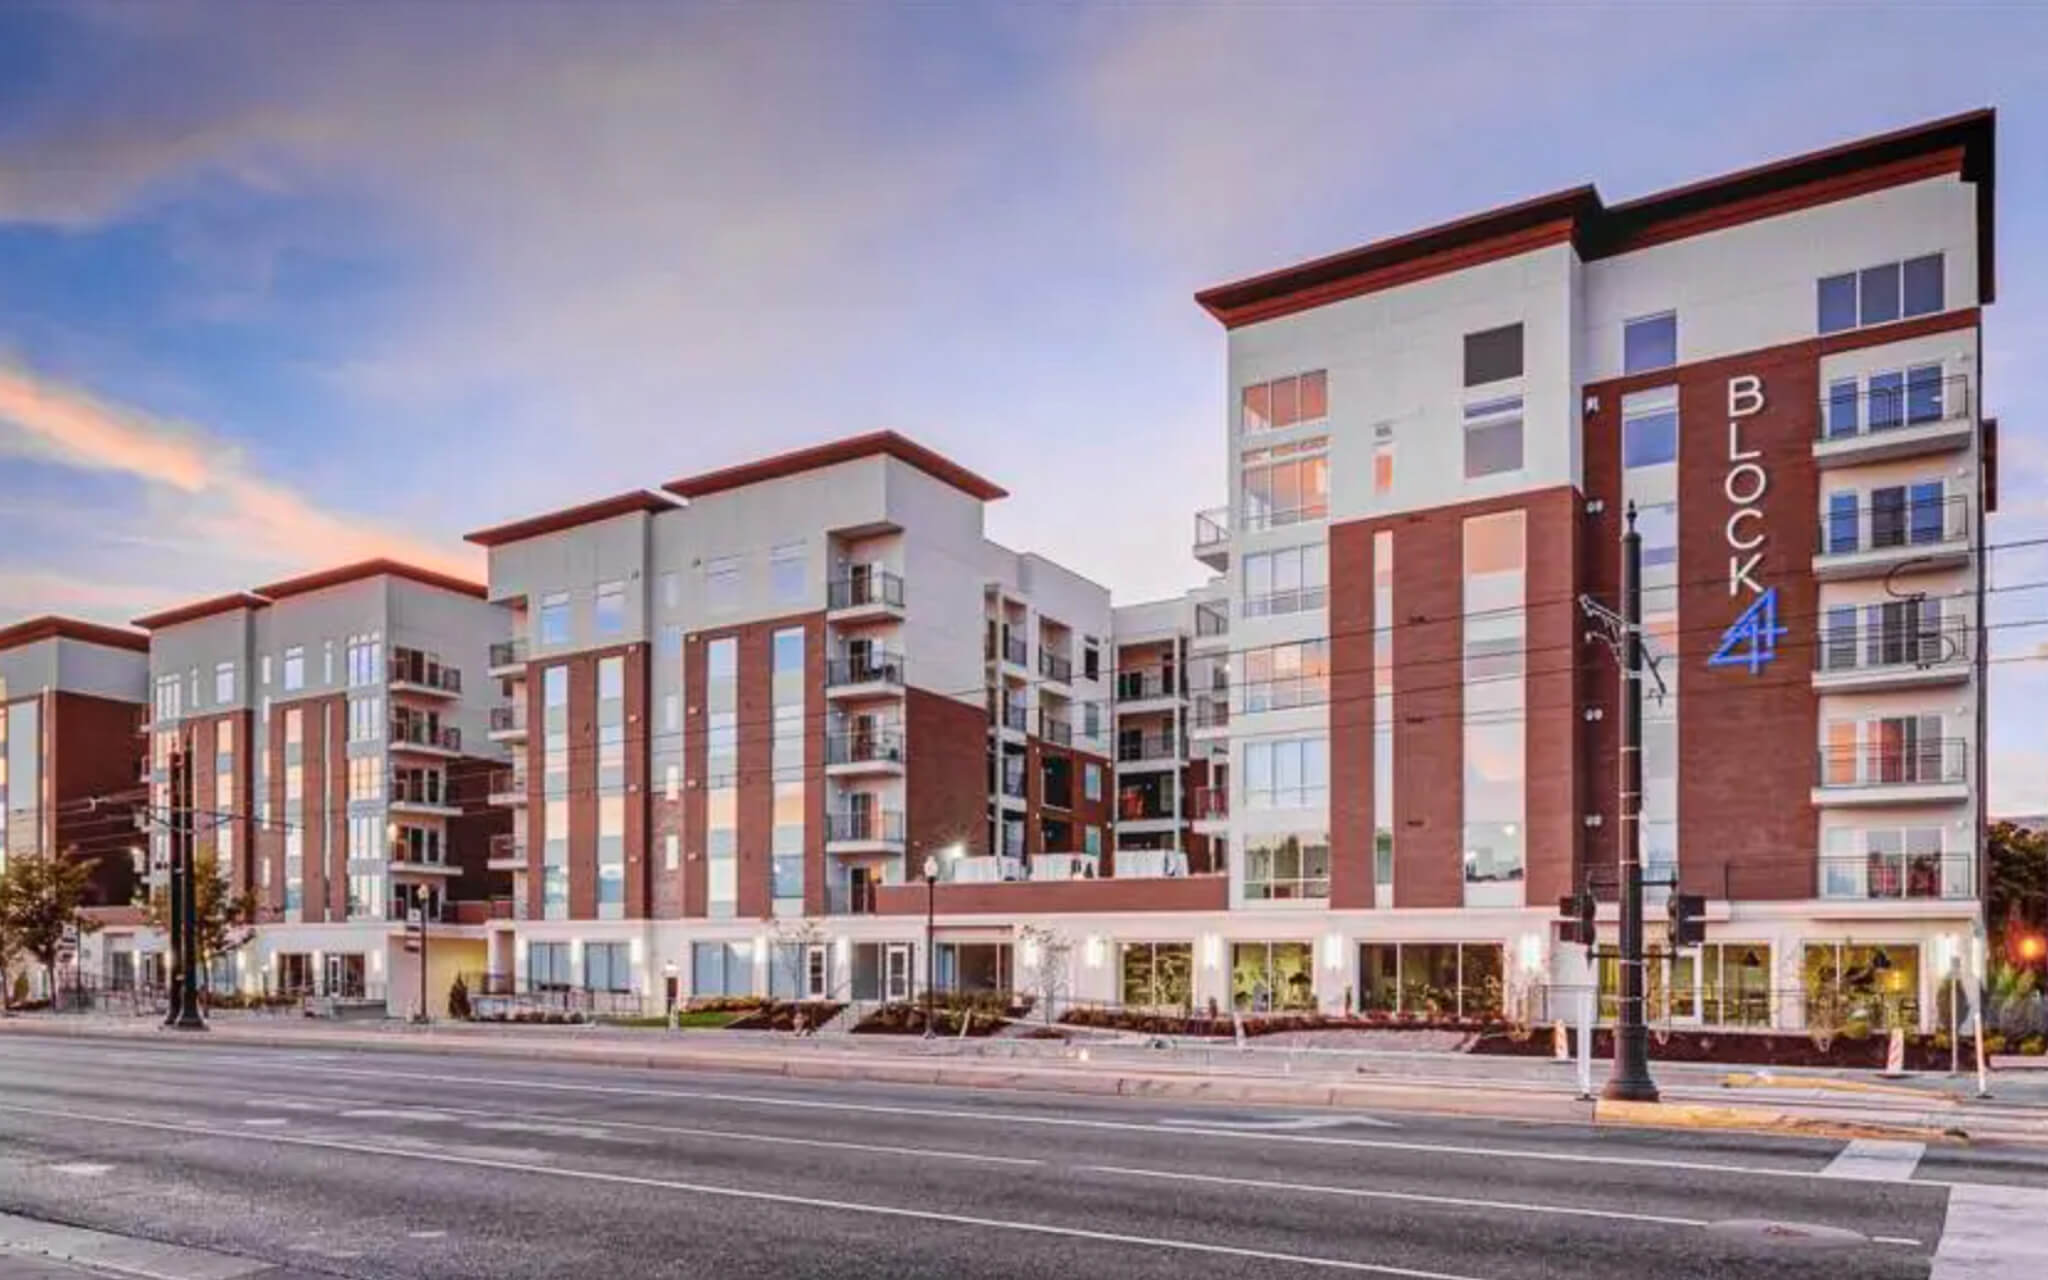 Paragon Corporate Housing - Block 44 Apartments - Salt Lake City Utah